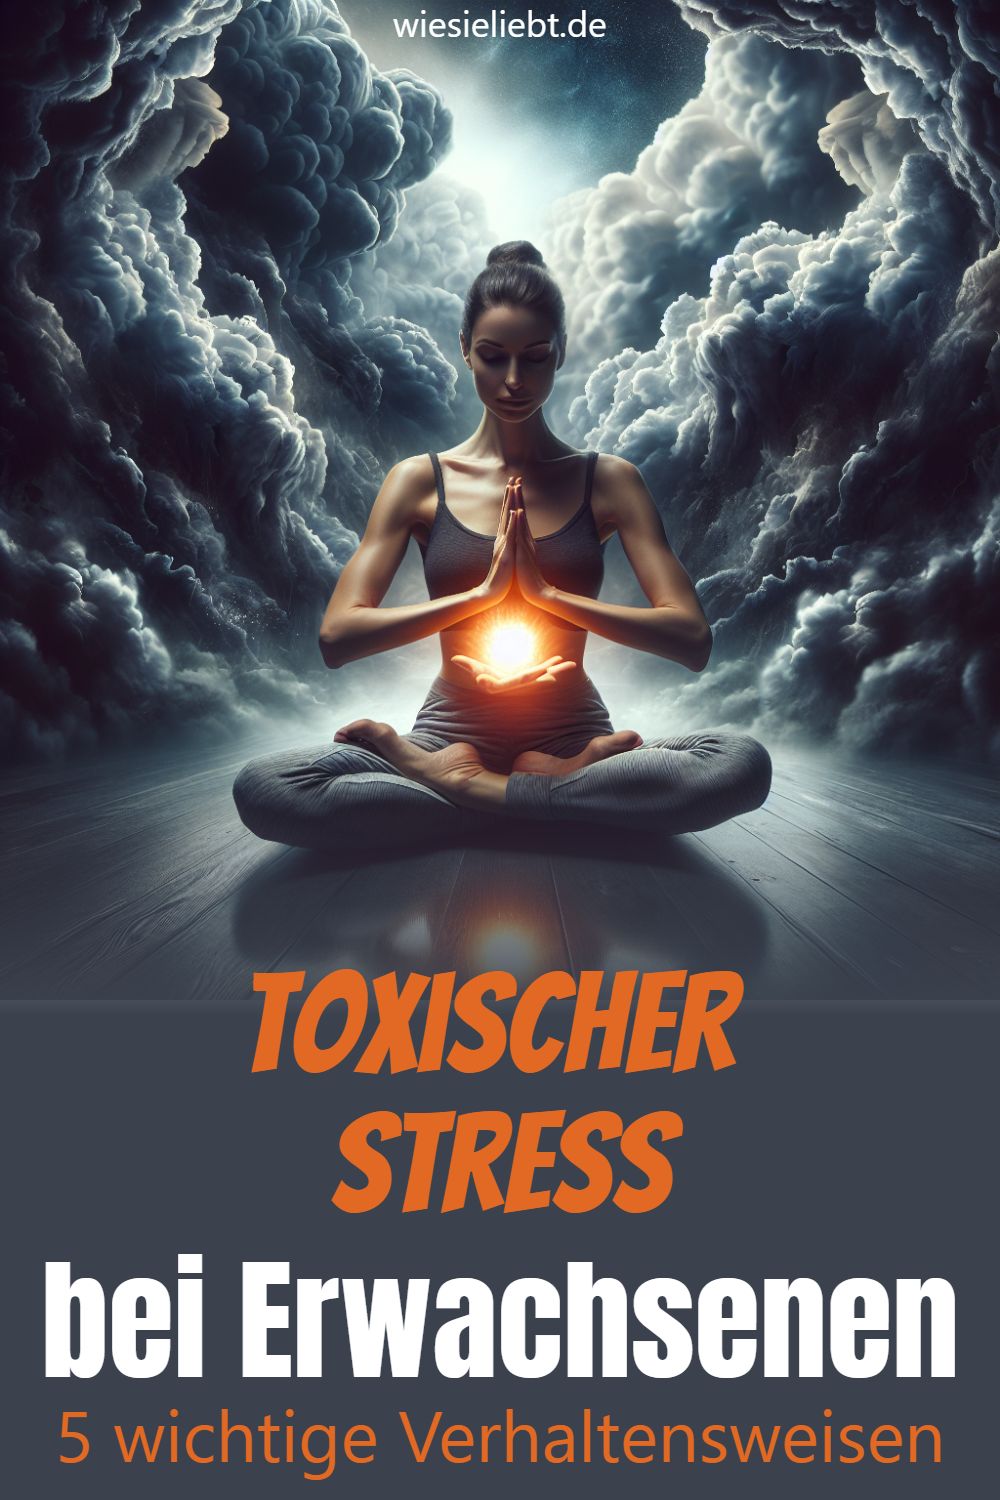 Toxischer Stress bei Erwachsenen 5 wichtige Verhaltensweisen